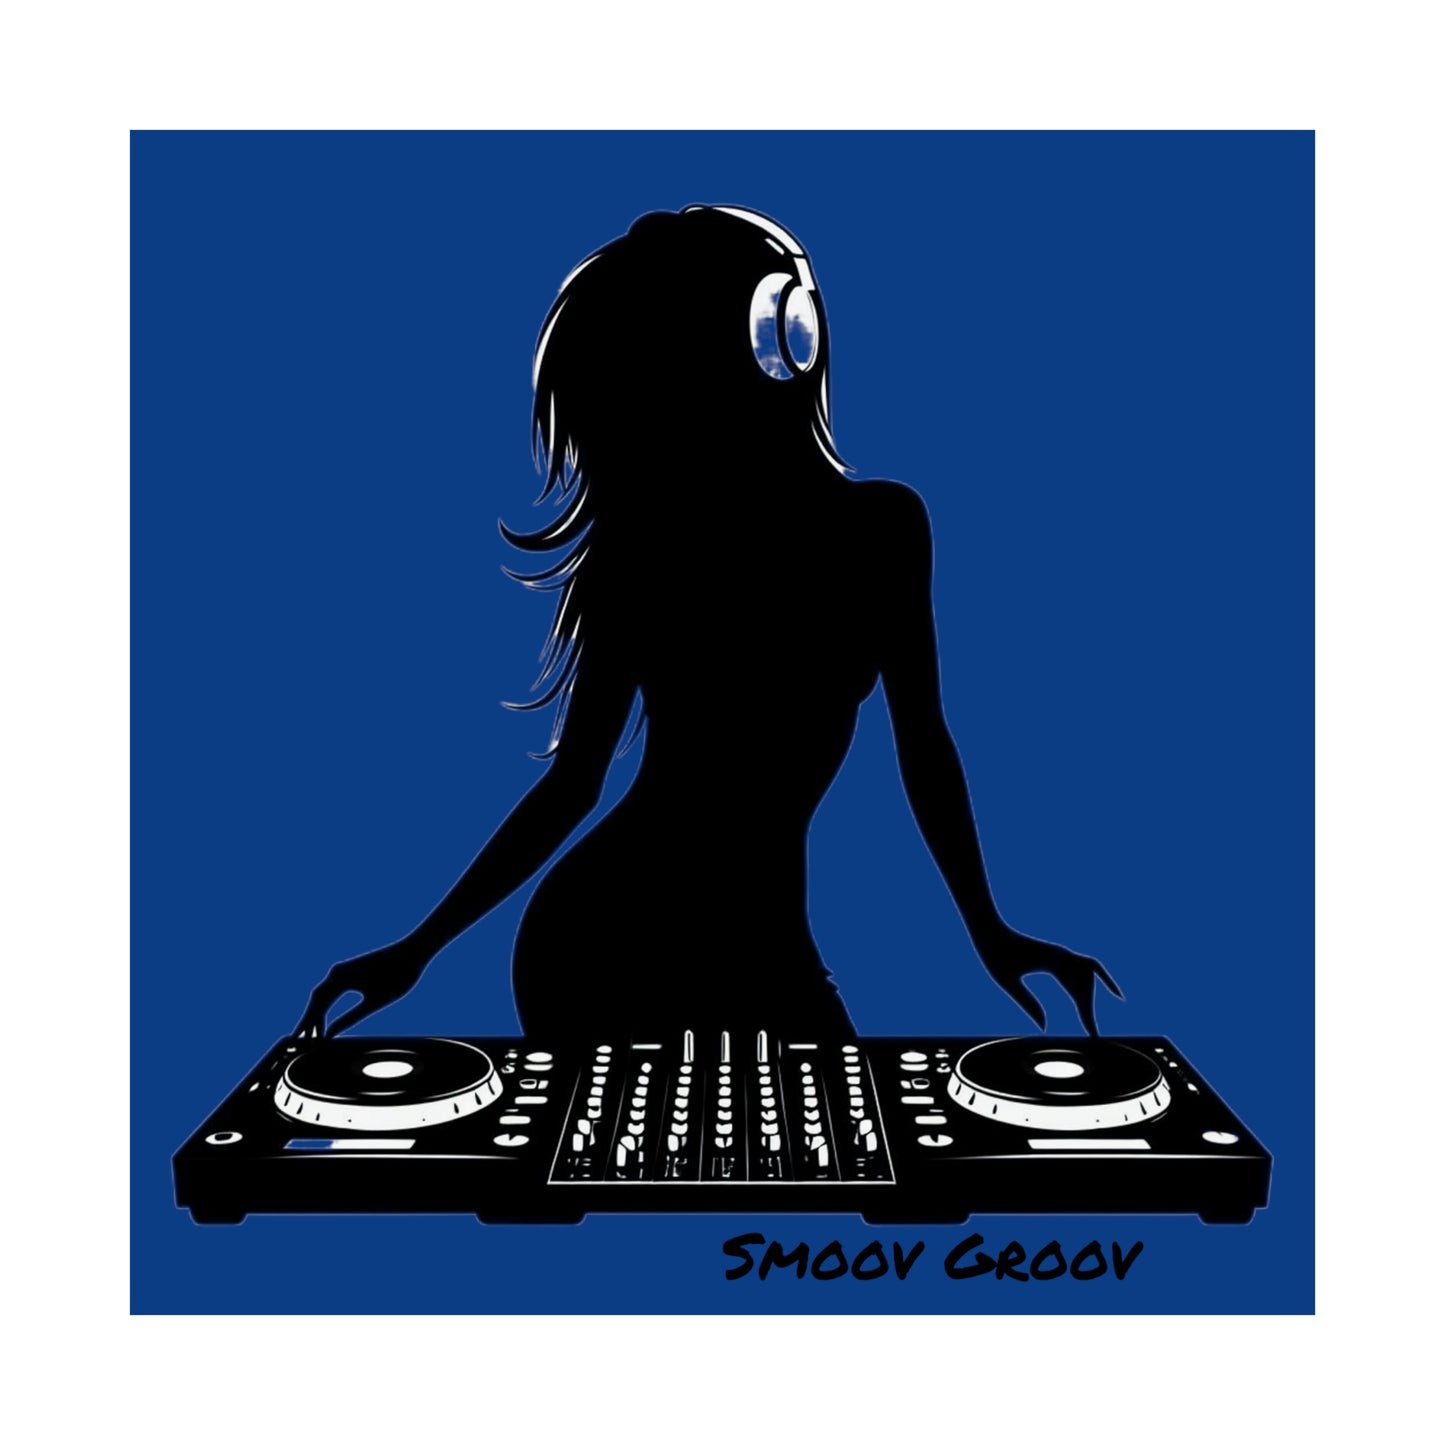 Smoov Girl Groov DJ in blue